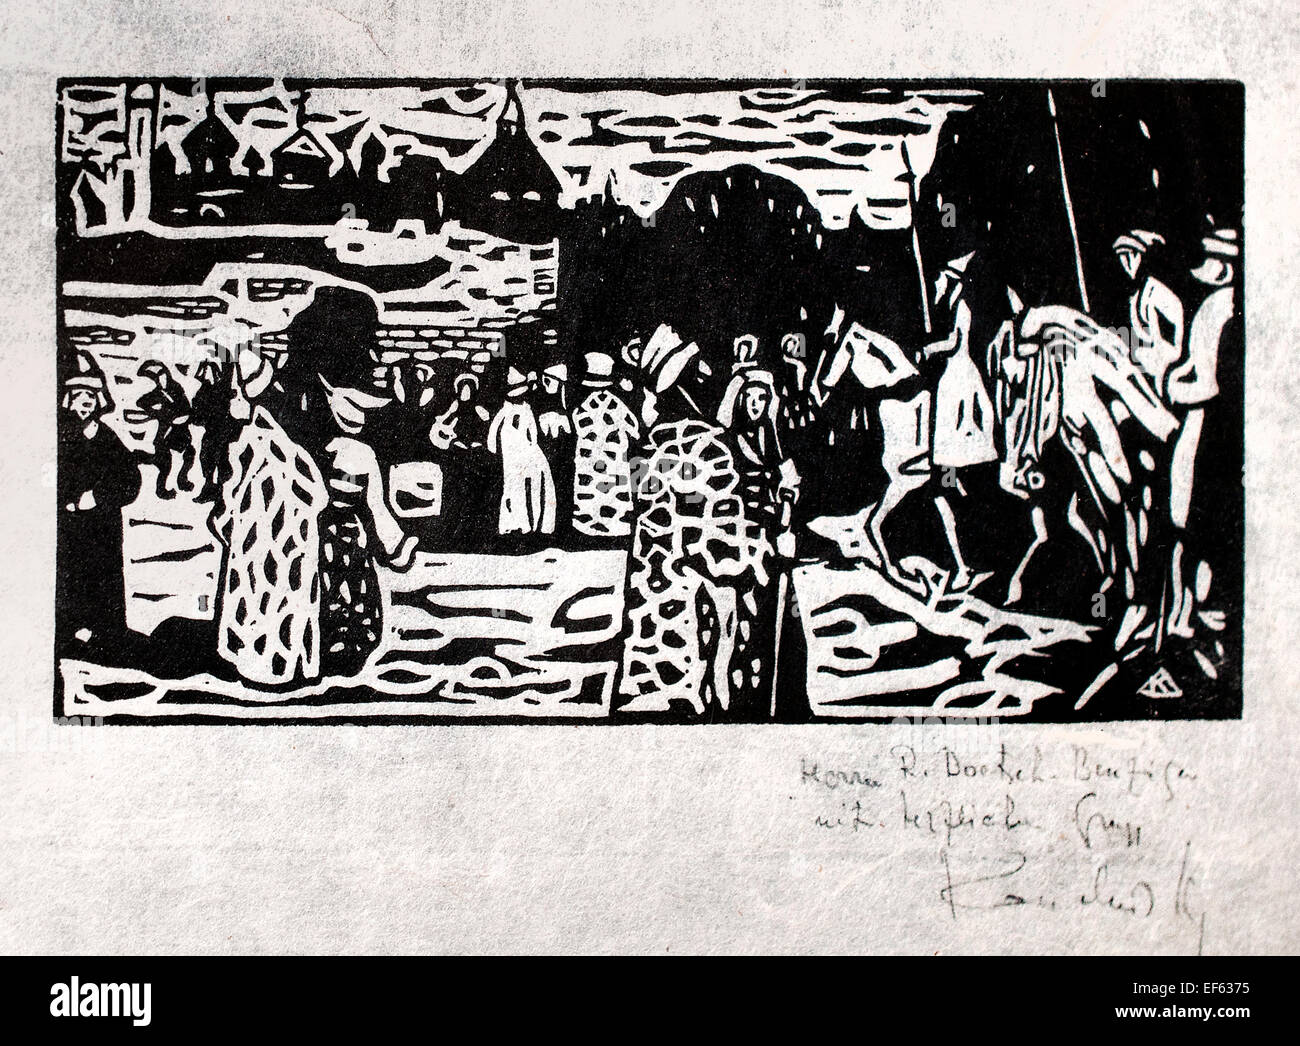 Sonntag-Altrussisch - Sonntag altrussischen 1904 Wassily Kandinsky 1866-1944 russische Russland (Vatikan Sammlung moderner religiöser Kunst Rom-Italien) Holzschnitt auf Papier Stockfoto